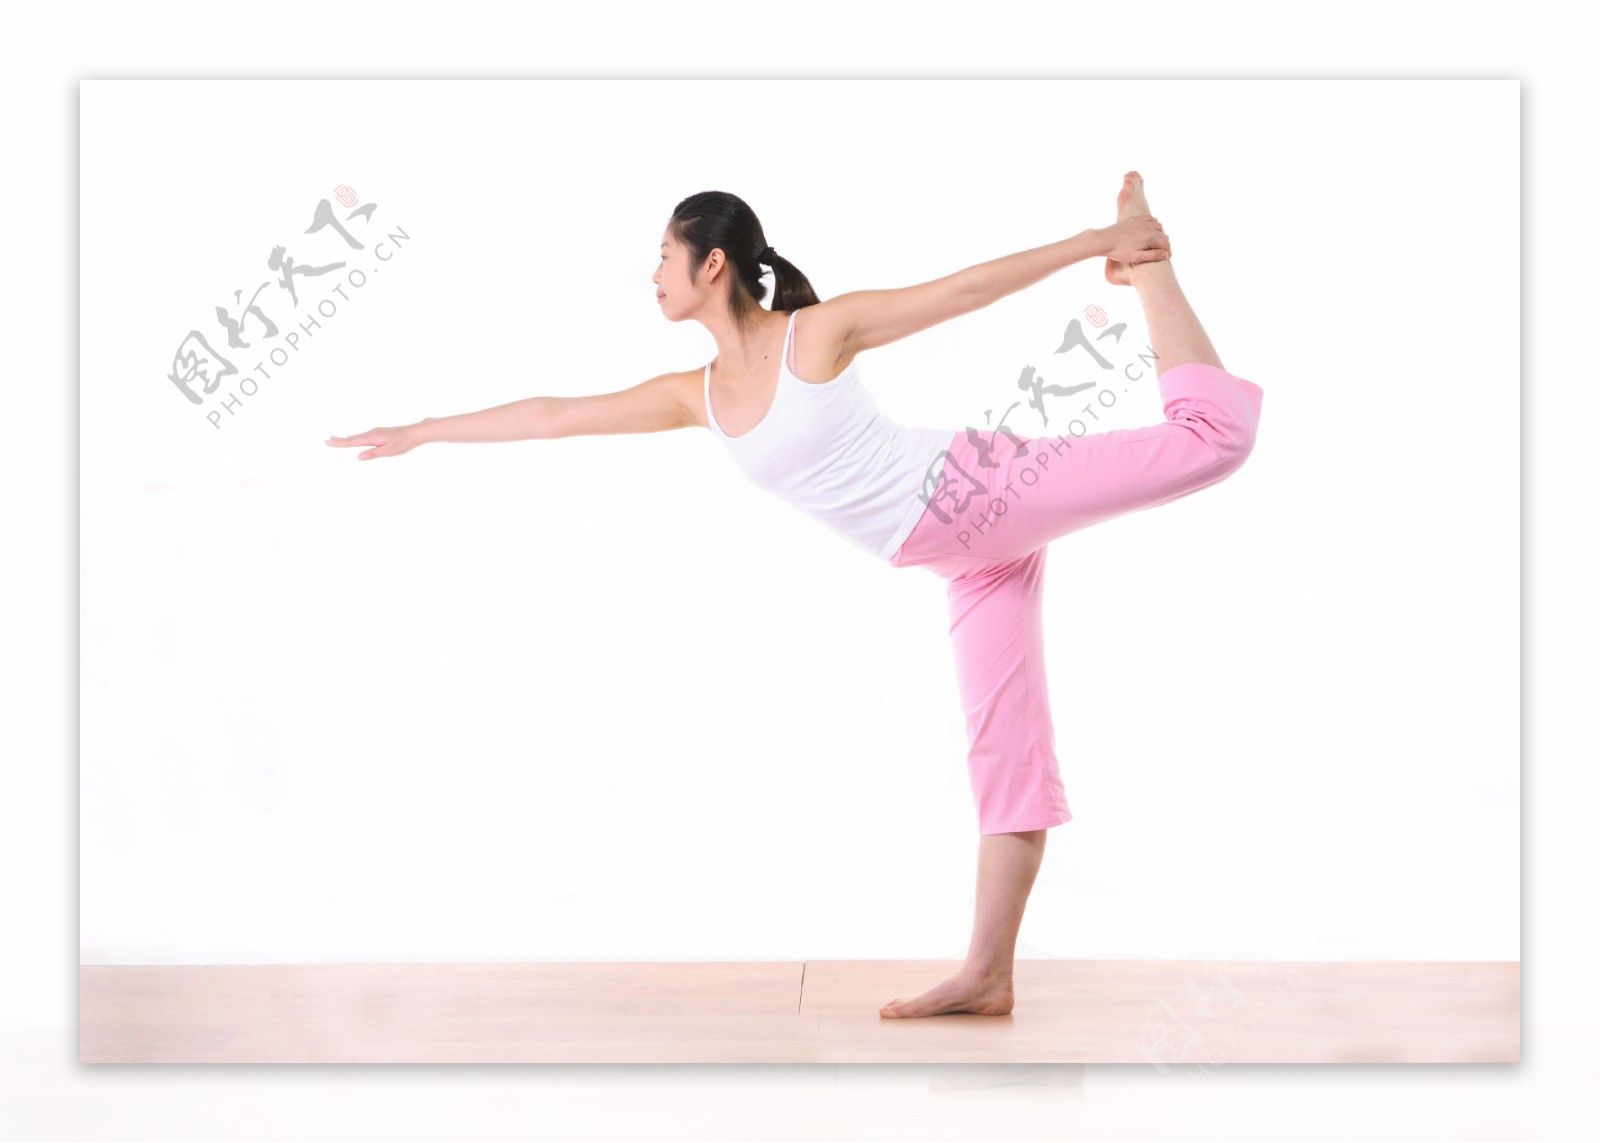 做瑜伽造型的运动少女图片图片